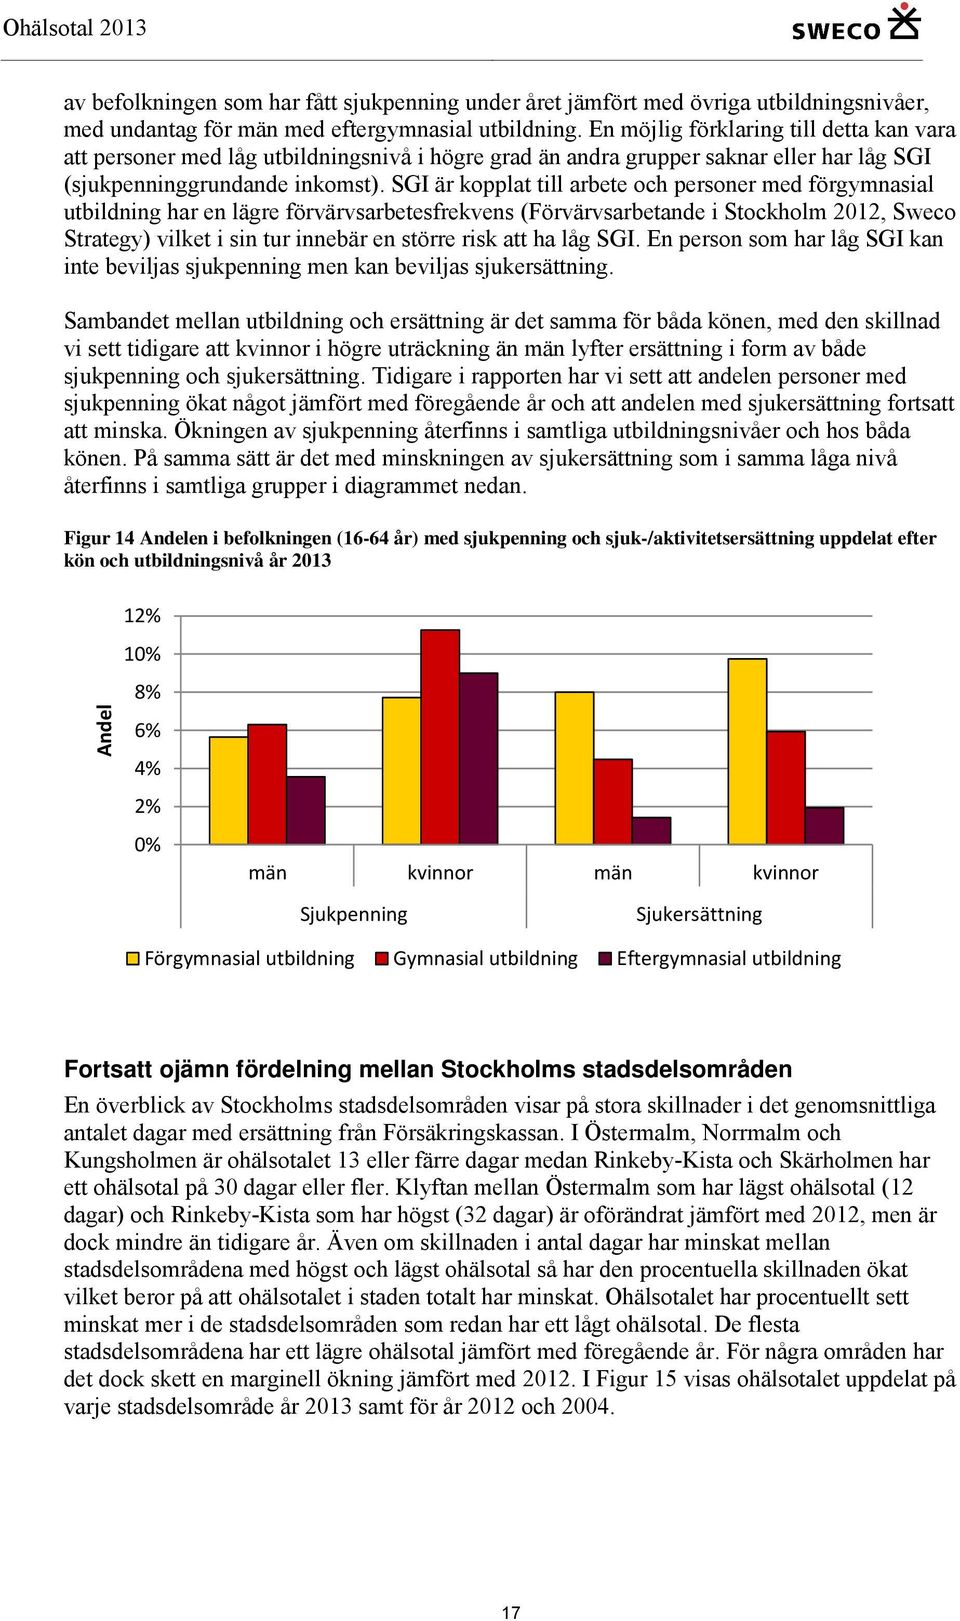 SGI är kopplat till arbete och personer med förgymnasial utbildning har en lägre förvärvsarbetesfrekvens (Förvärvsarbetande i Stockholm 2012, Sweco Strategy) vilket i sin tur innebär en större risk